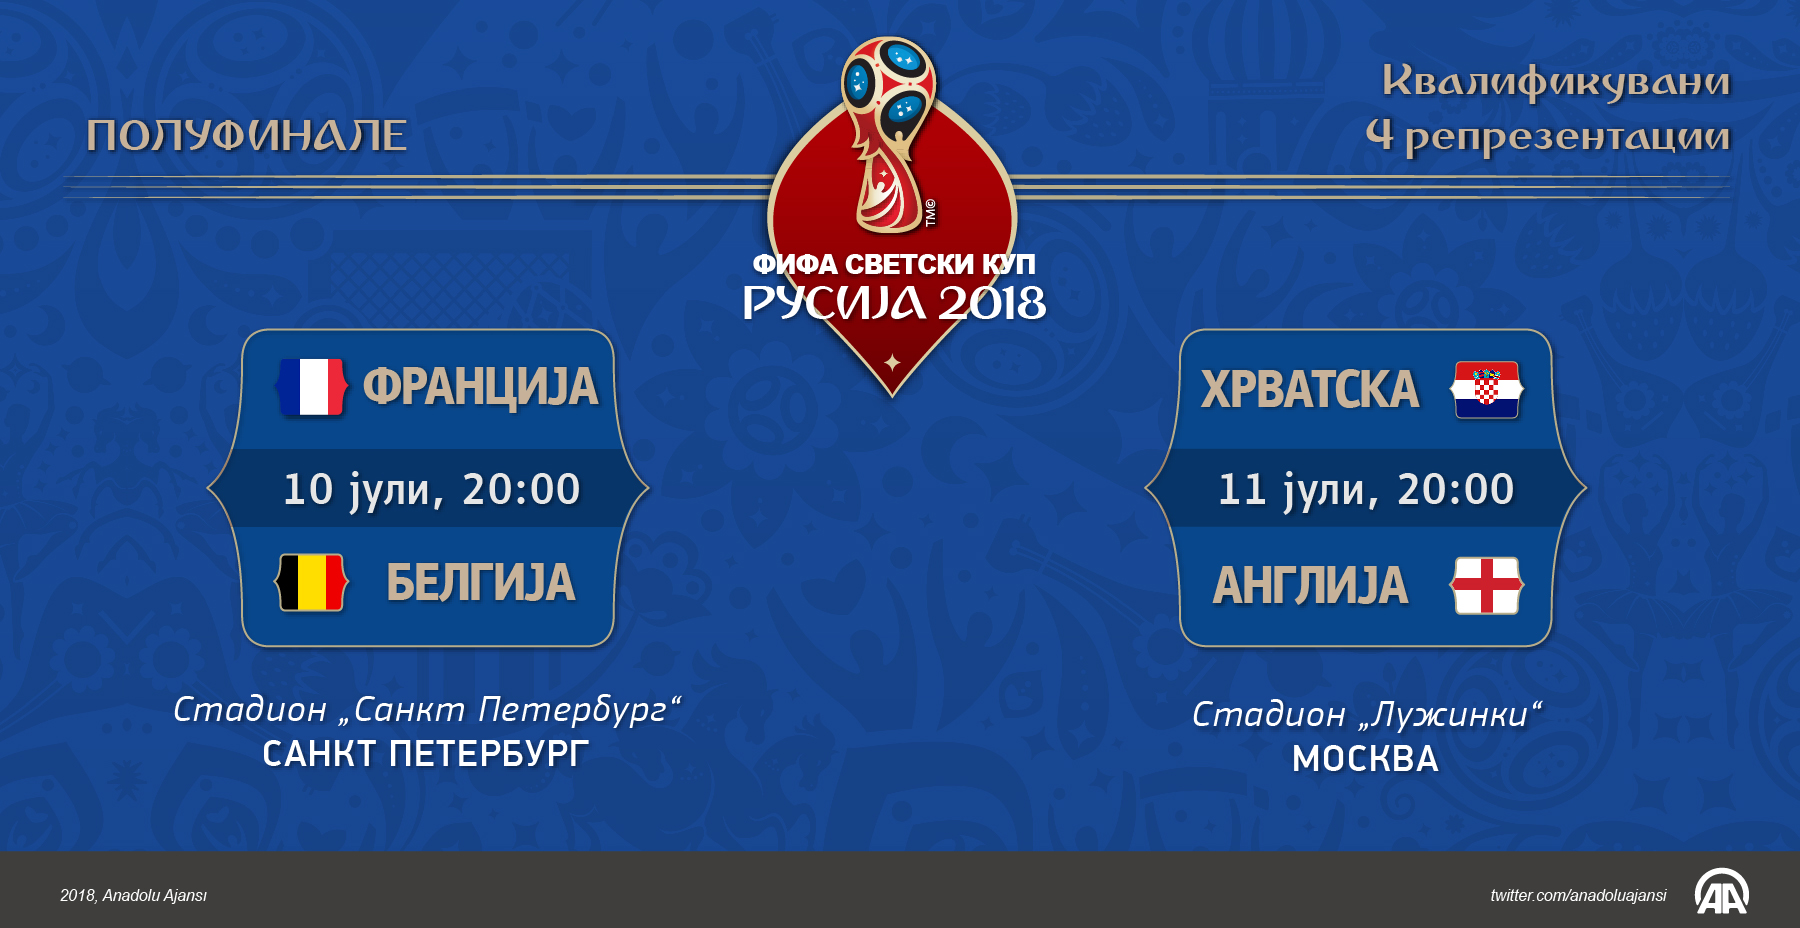 СП Русија 2018: Утре ќе биде познат првиот финалист